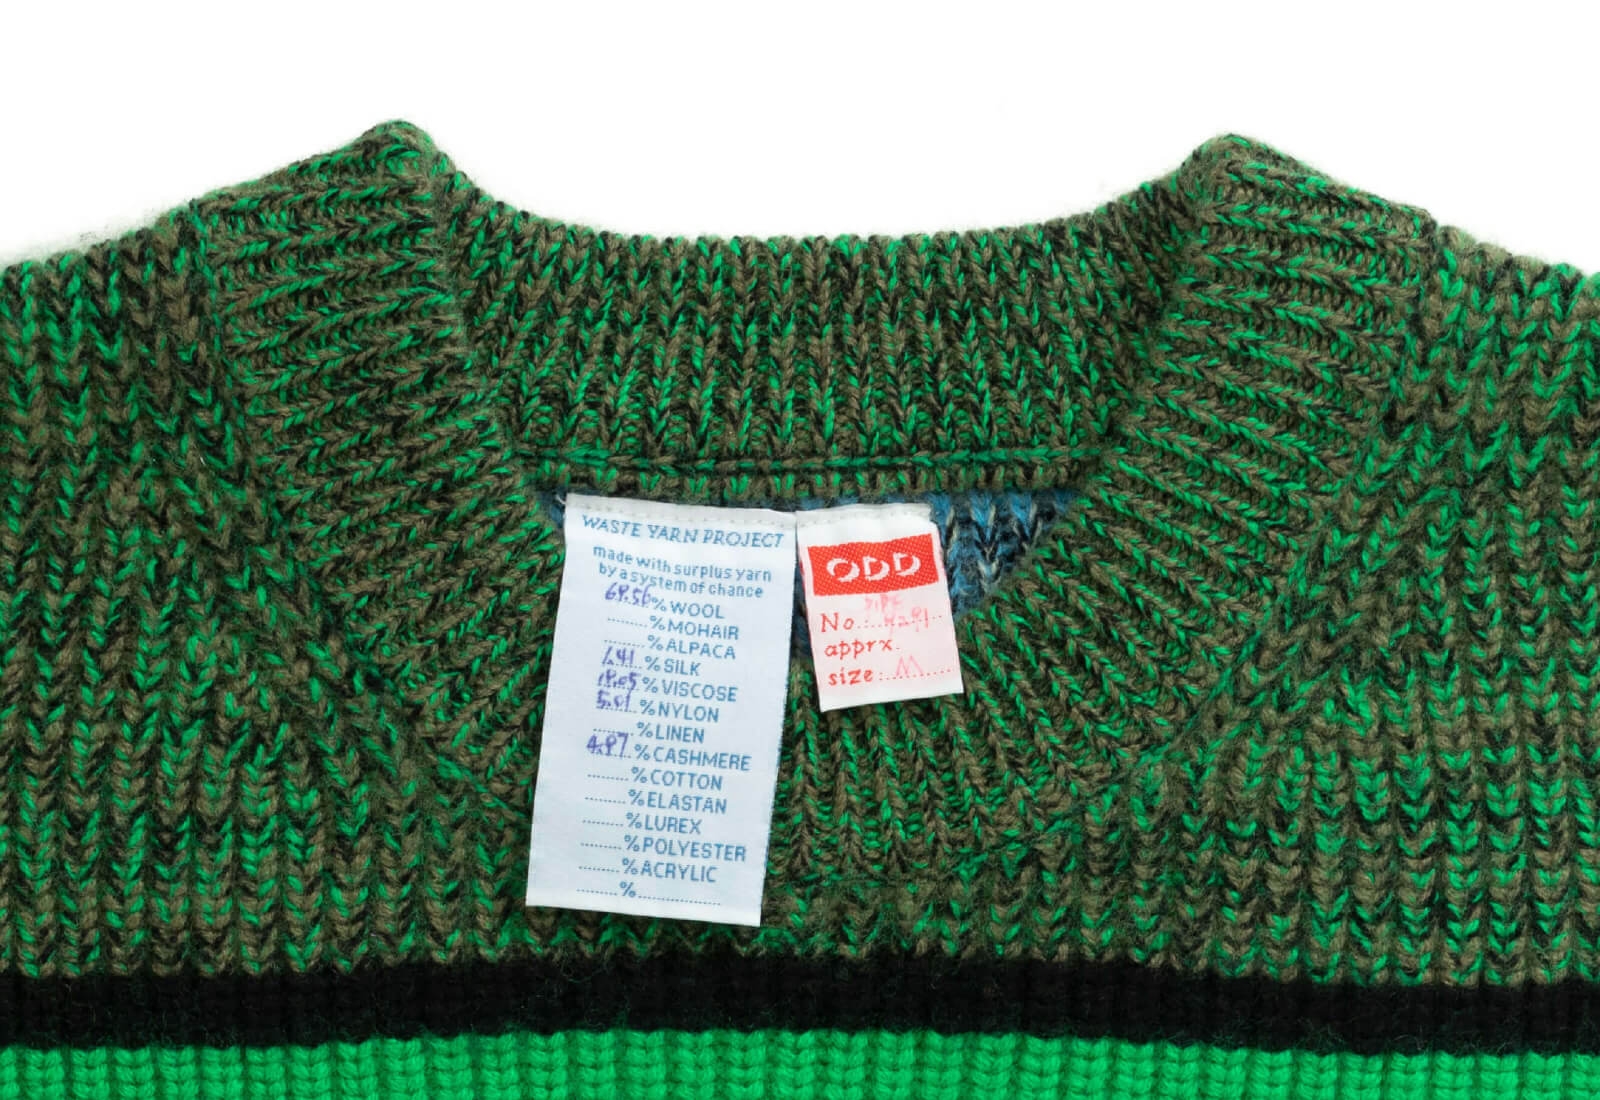 ODDS Pipe Sweater material closeup